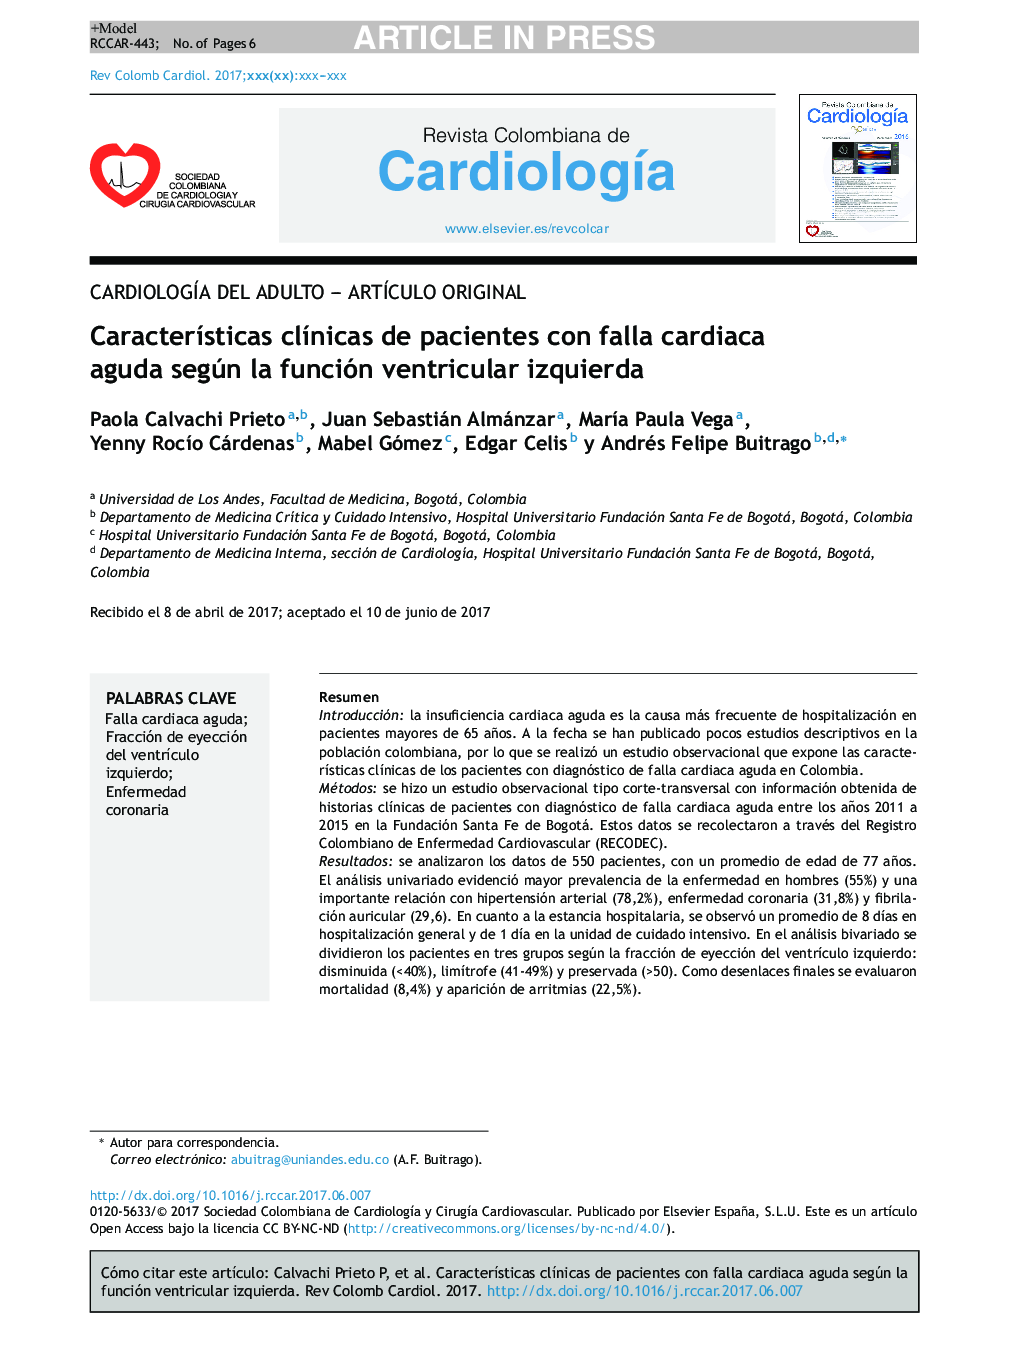 CaracterÃ­sticas clÃ­nicas de pacientes con falla cardiaca aguda según la función ventricular izquierda